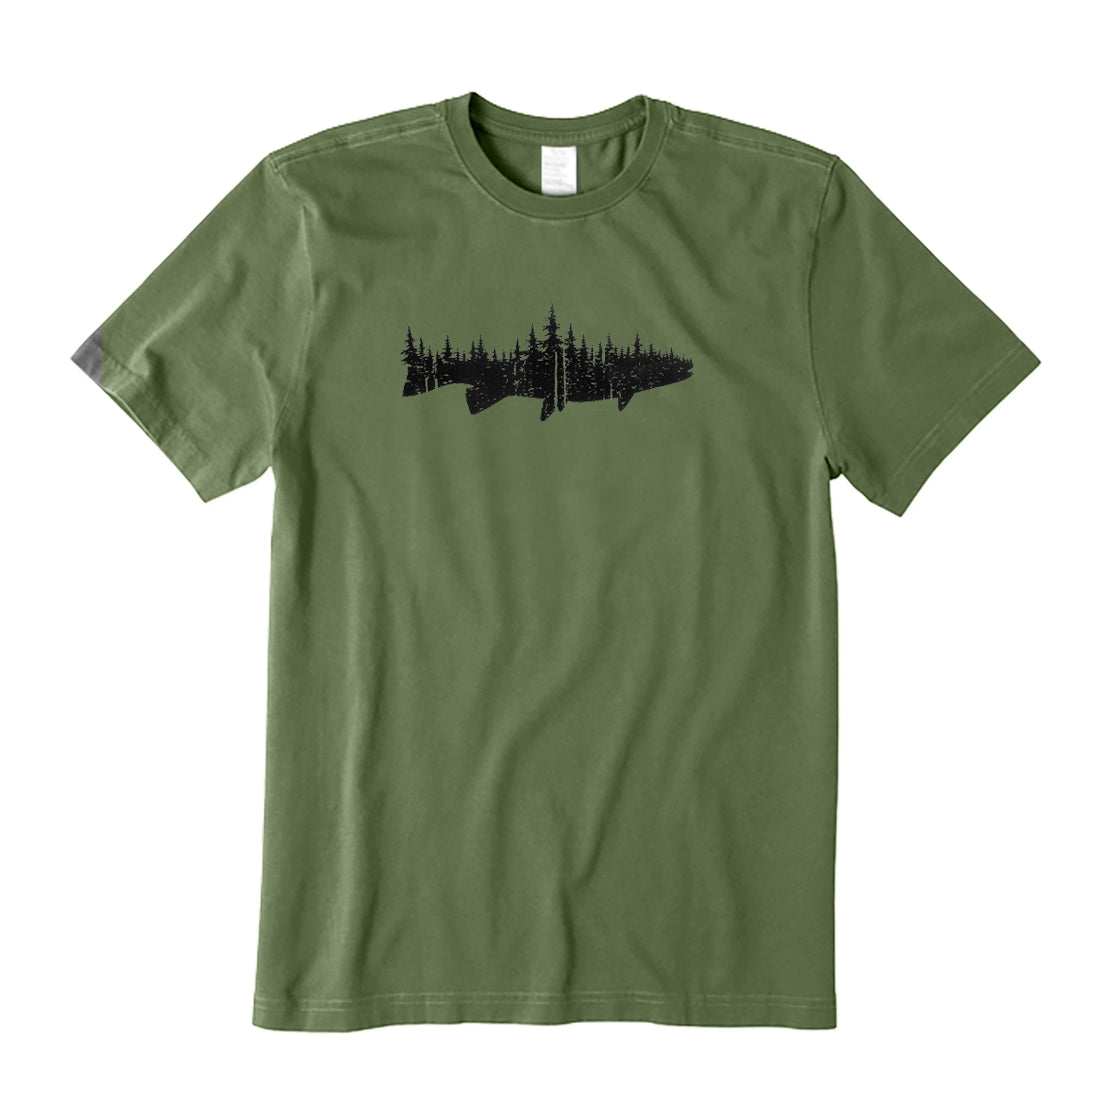 Fish Forest Landscape T-Shirt